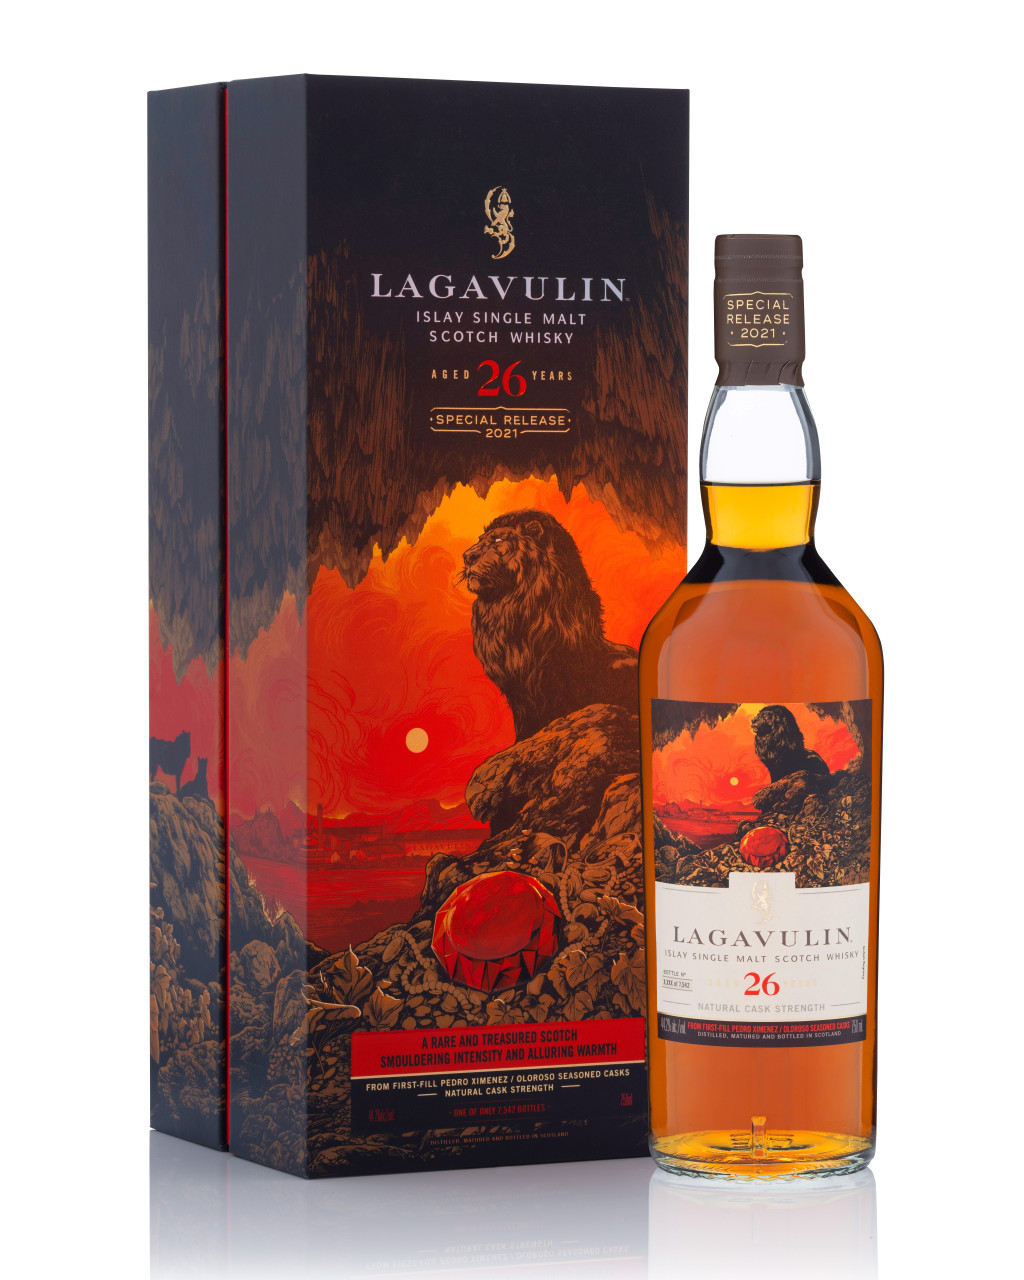 Lagavulin 26 YO, Legends Untold 2021 - Aficionados al whisky